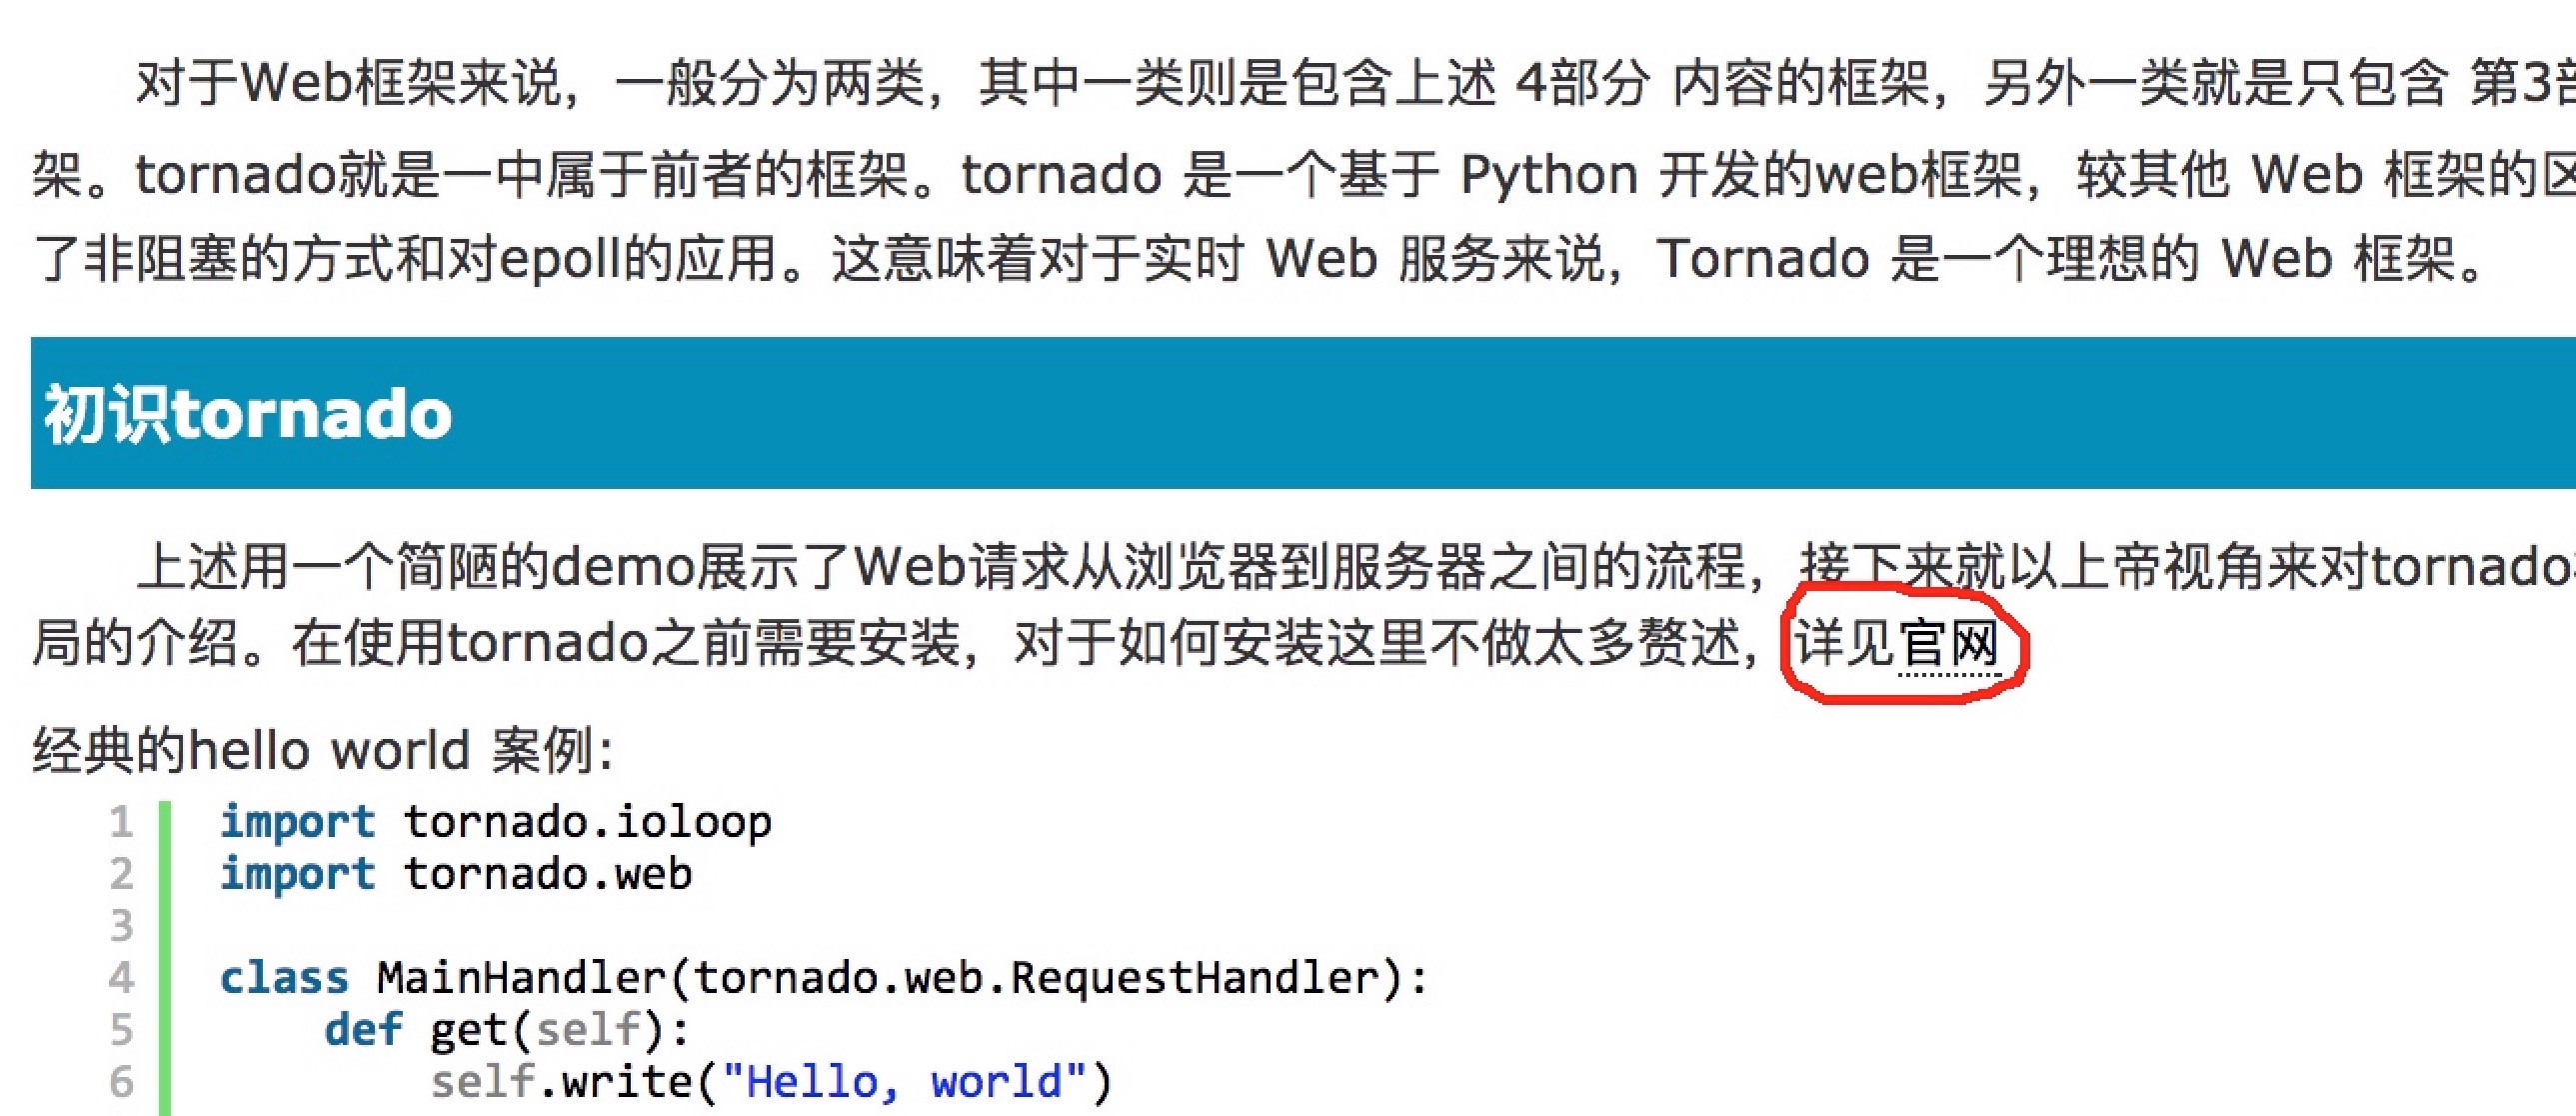 tornadoweb cn as org